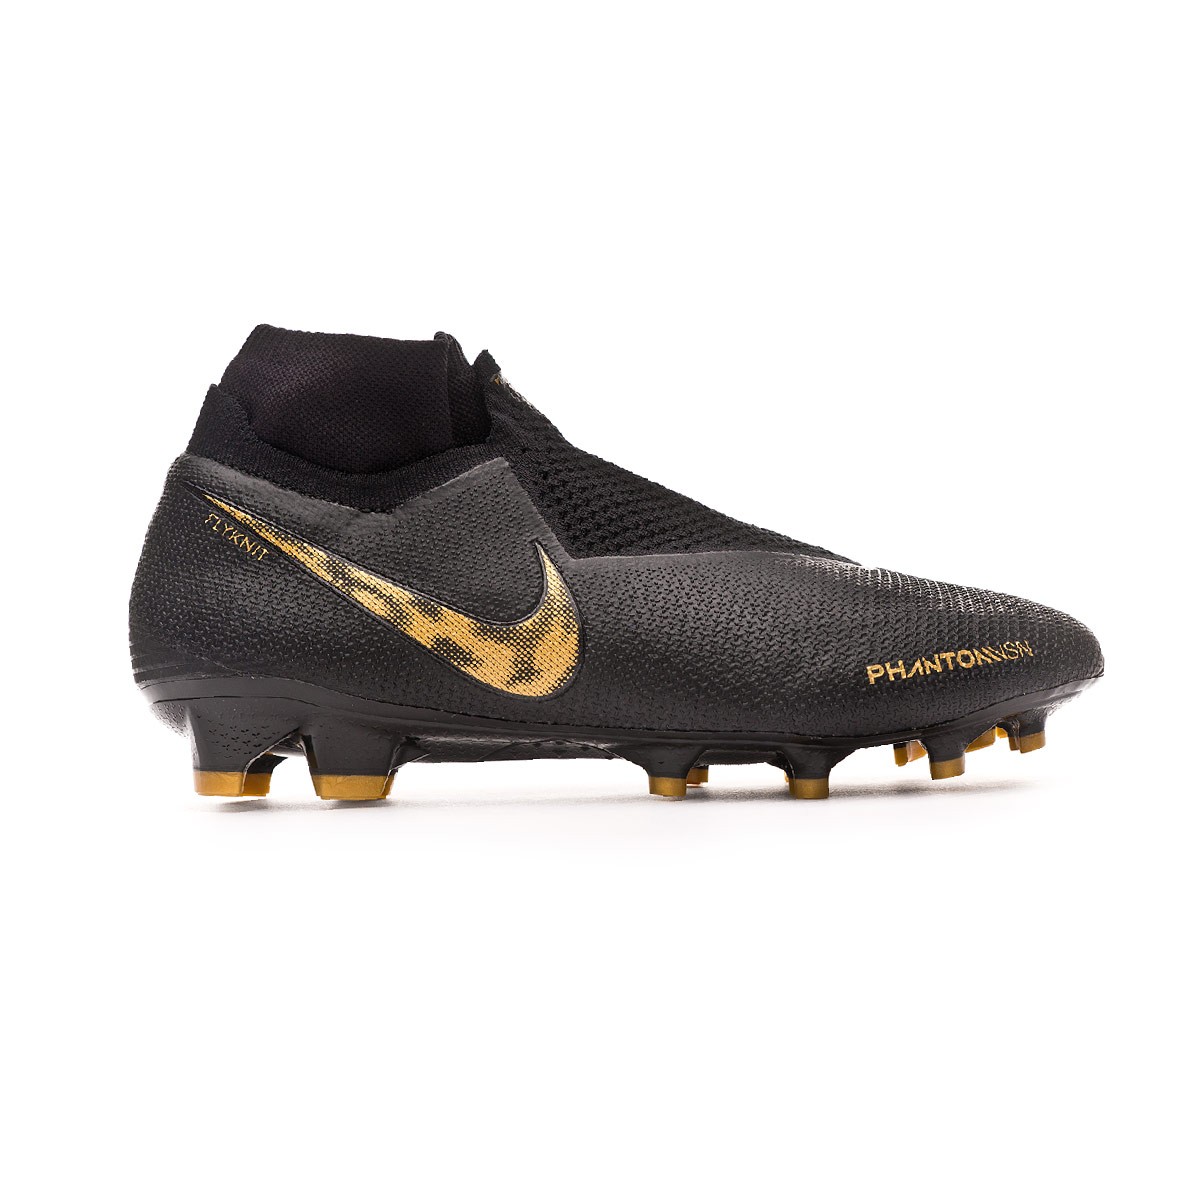 Football Boots Nike Phantom Vision Elite DF FG Black-Metallic vivid gold -  Football store Fútbol Emotion